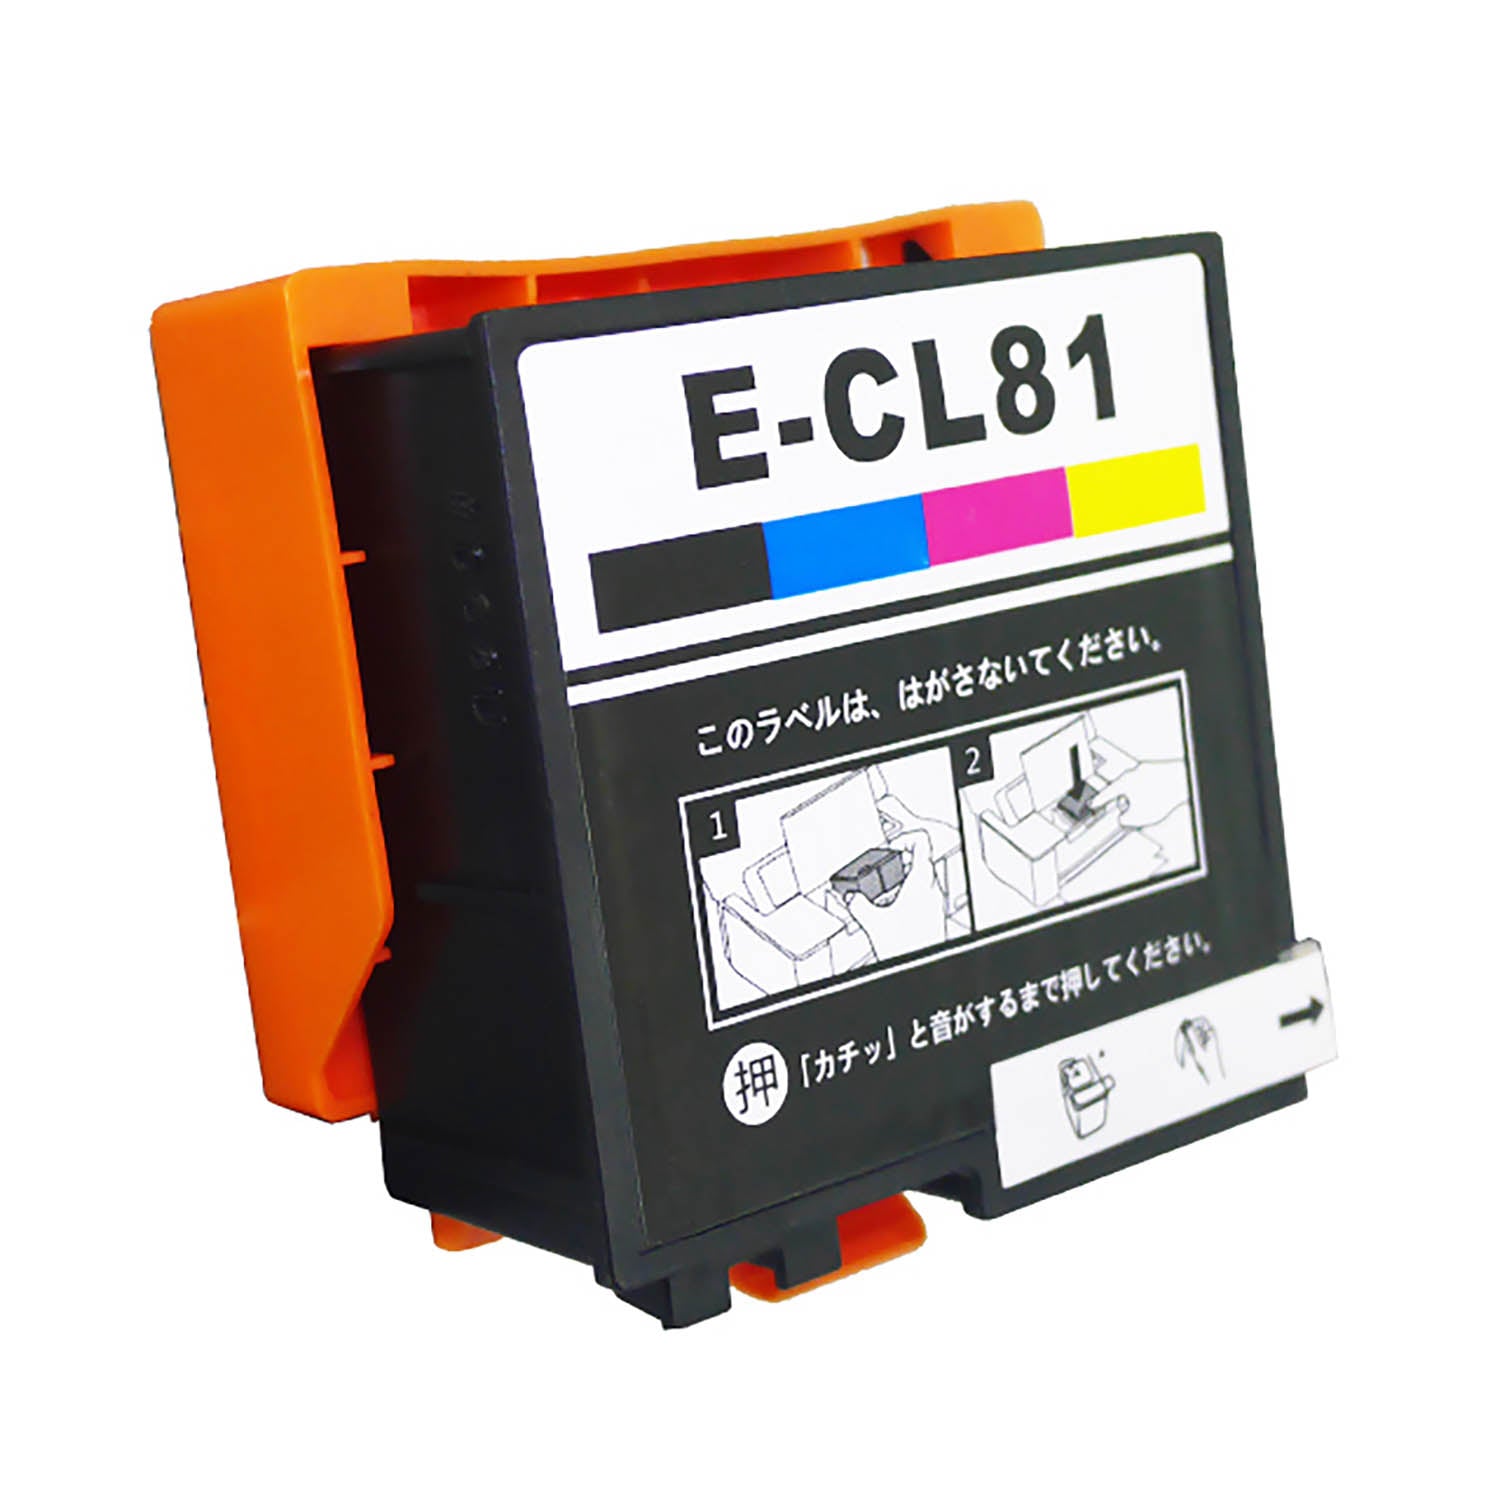 エプソン用 ICCL81 (ソフトクリーム) 互換インク 4色一体型